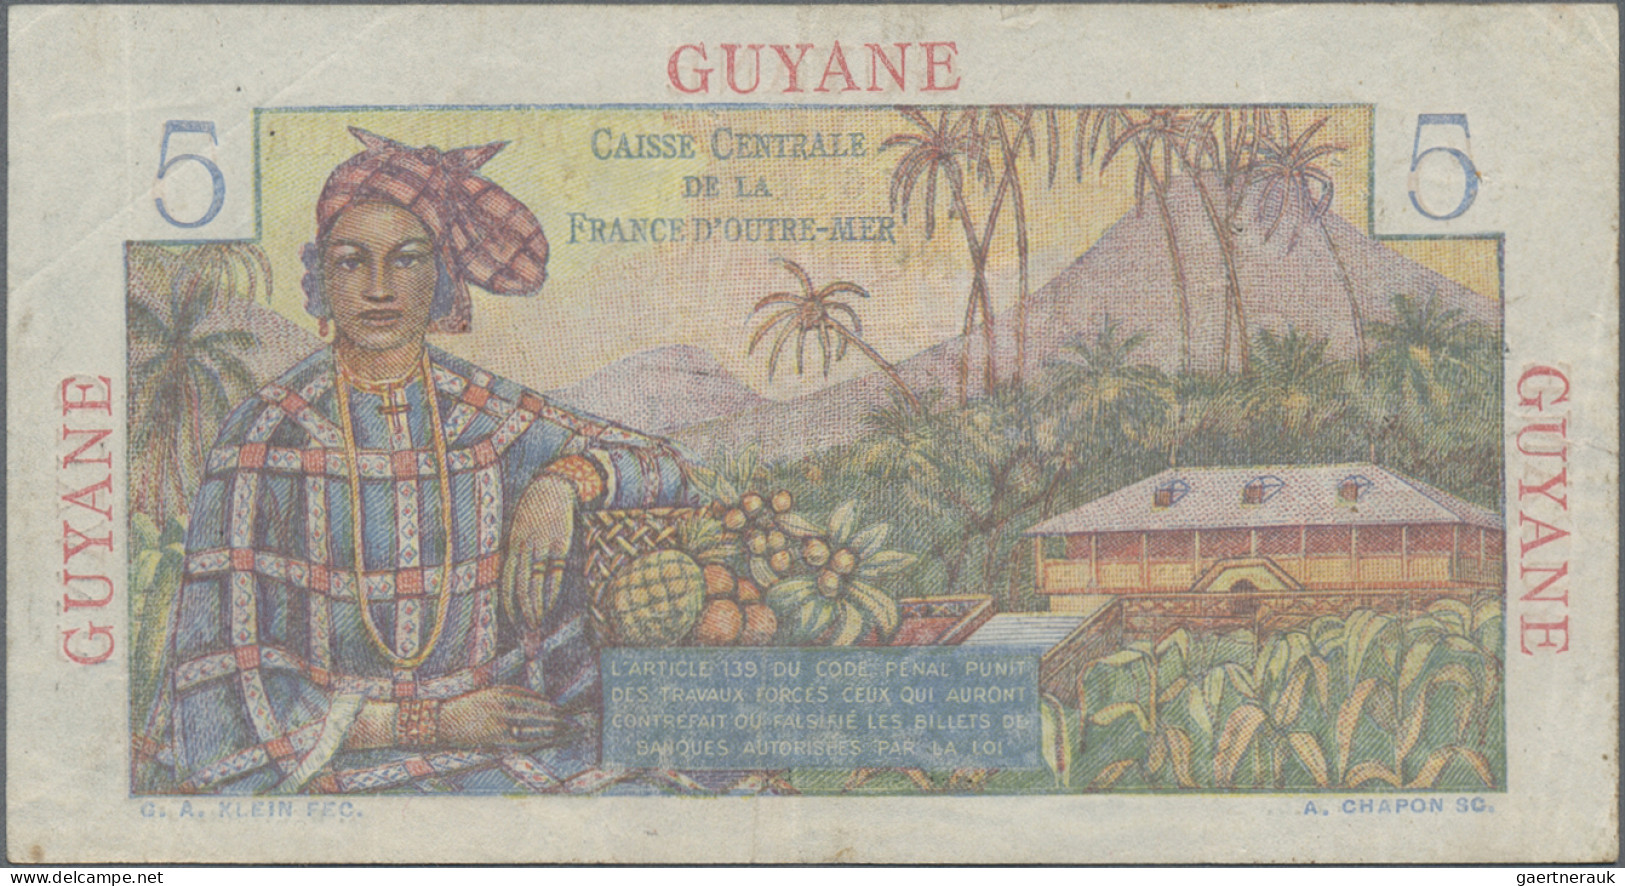 French Guiana: Banque De La Guyane And Caisse Centrale De La France D'Outre-Mer - Guyane Française